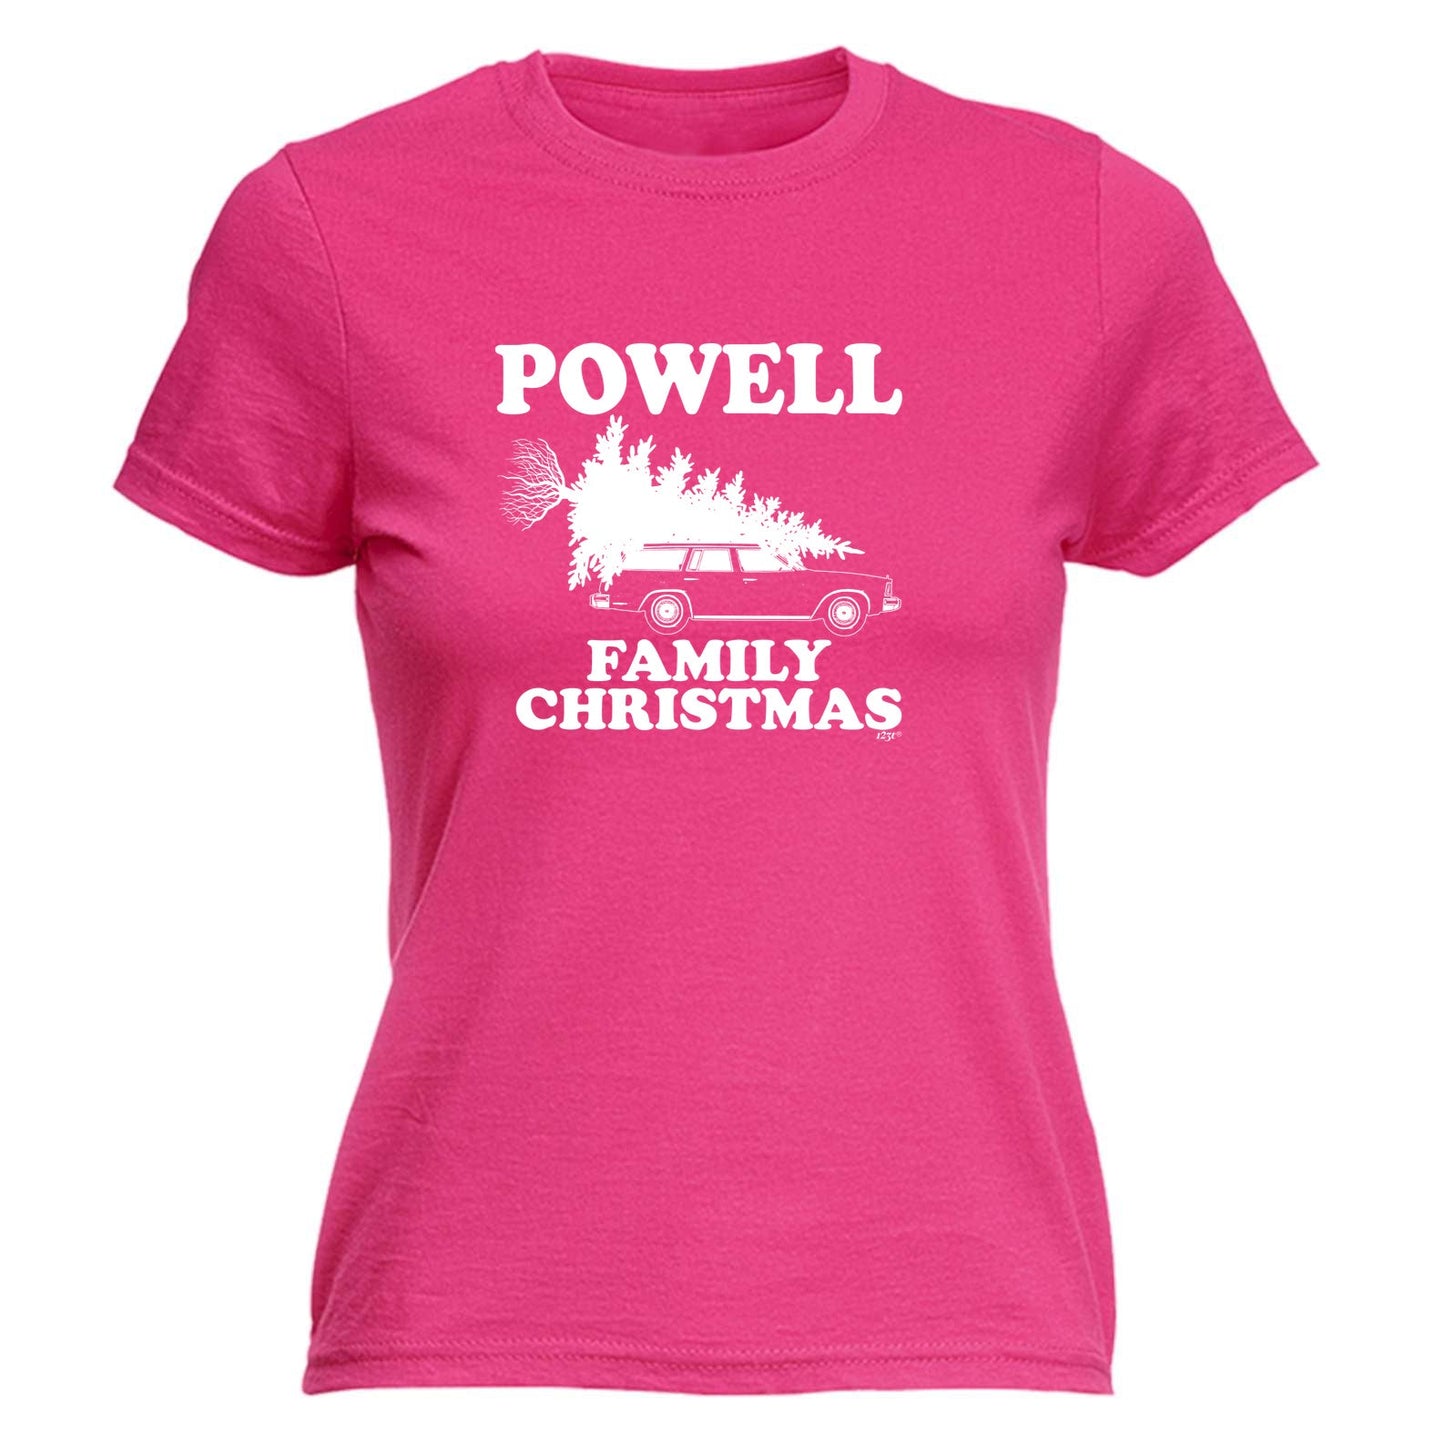 Family Christmas Powell - Xmas Novelty Womens T-Shirt Tshirt